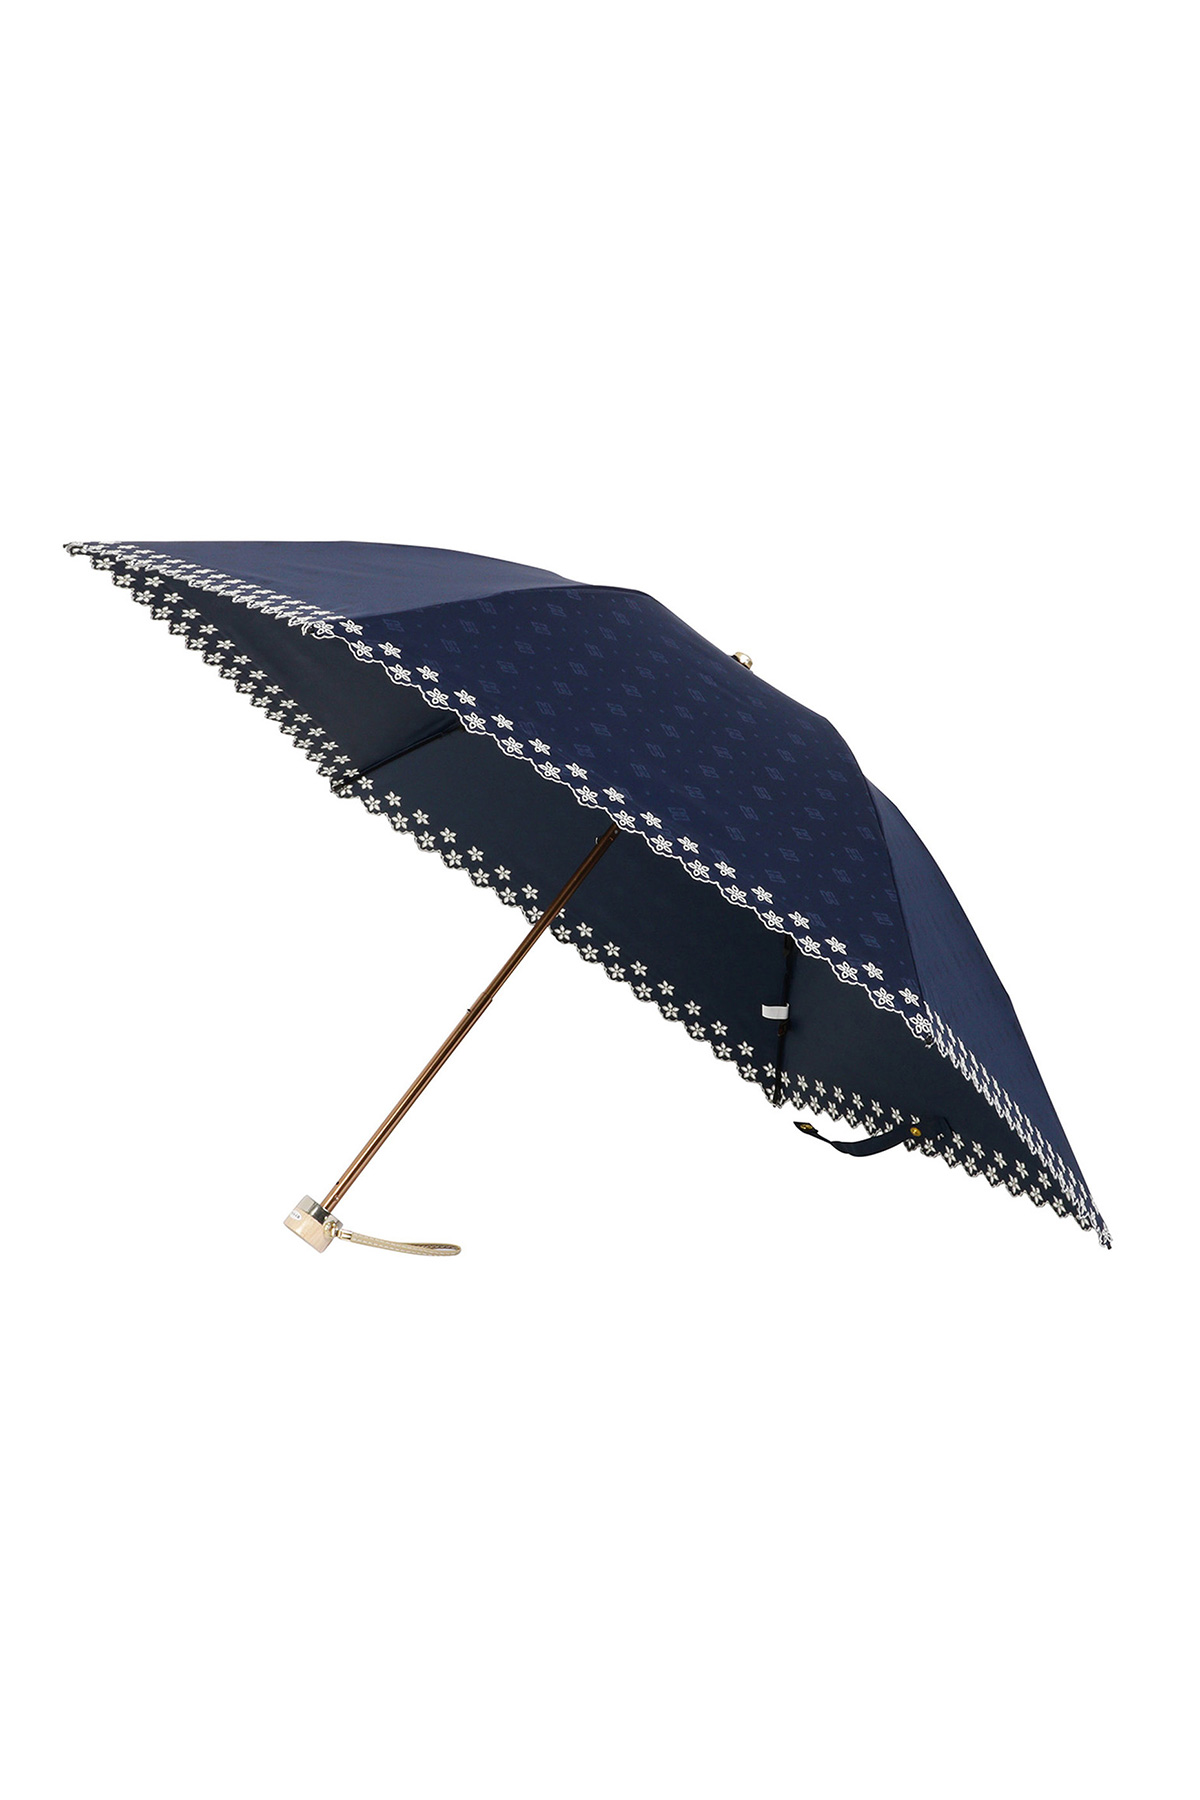 【日傘】ミニ折りたたみ傘ジャカード刺繍 詳細画像 4